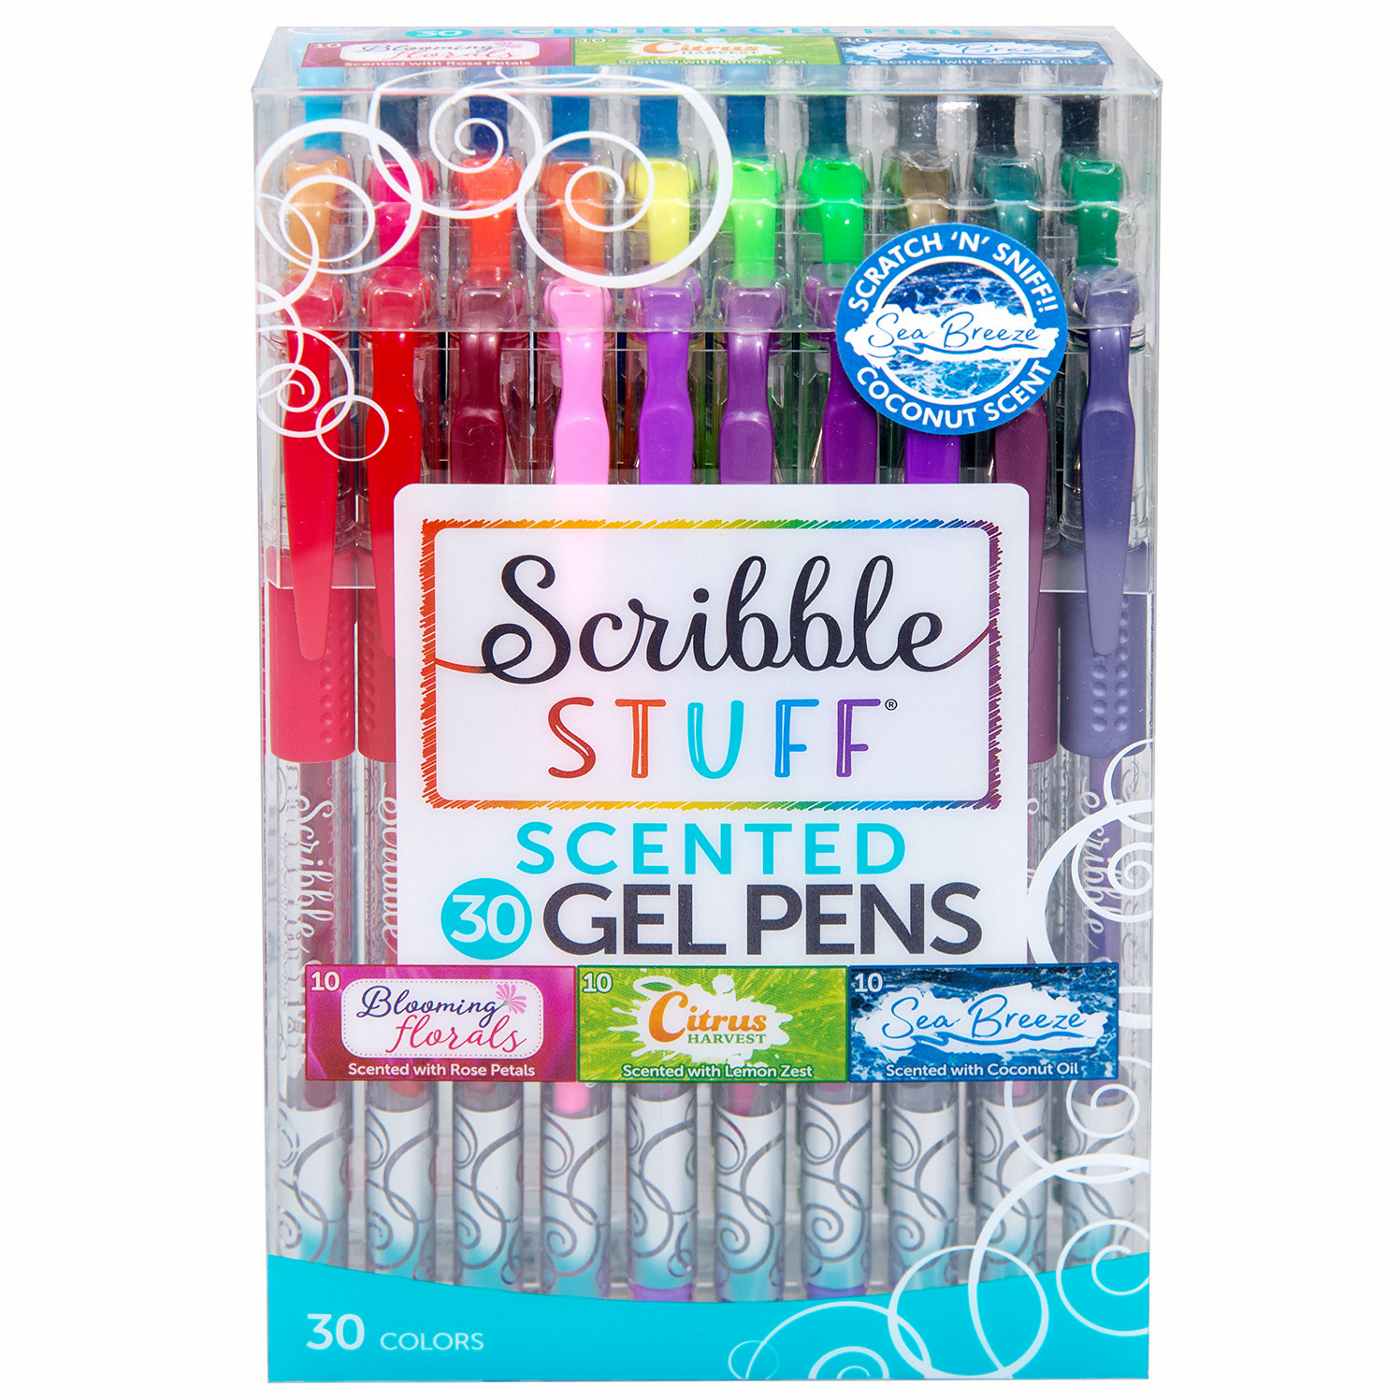 Scribble Stuff Scented Gel Pens - Assorted Ink